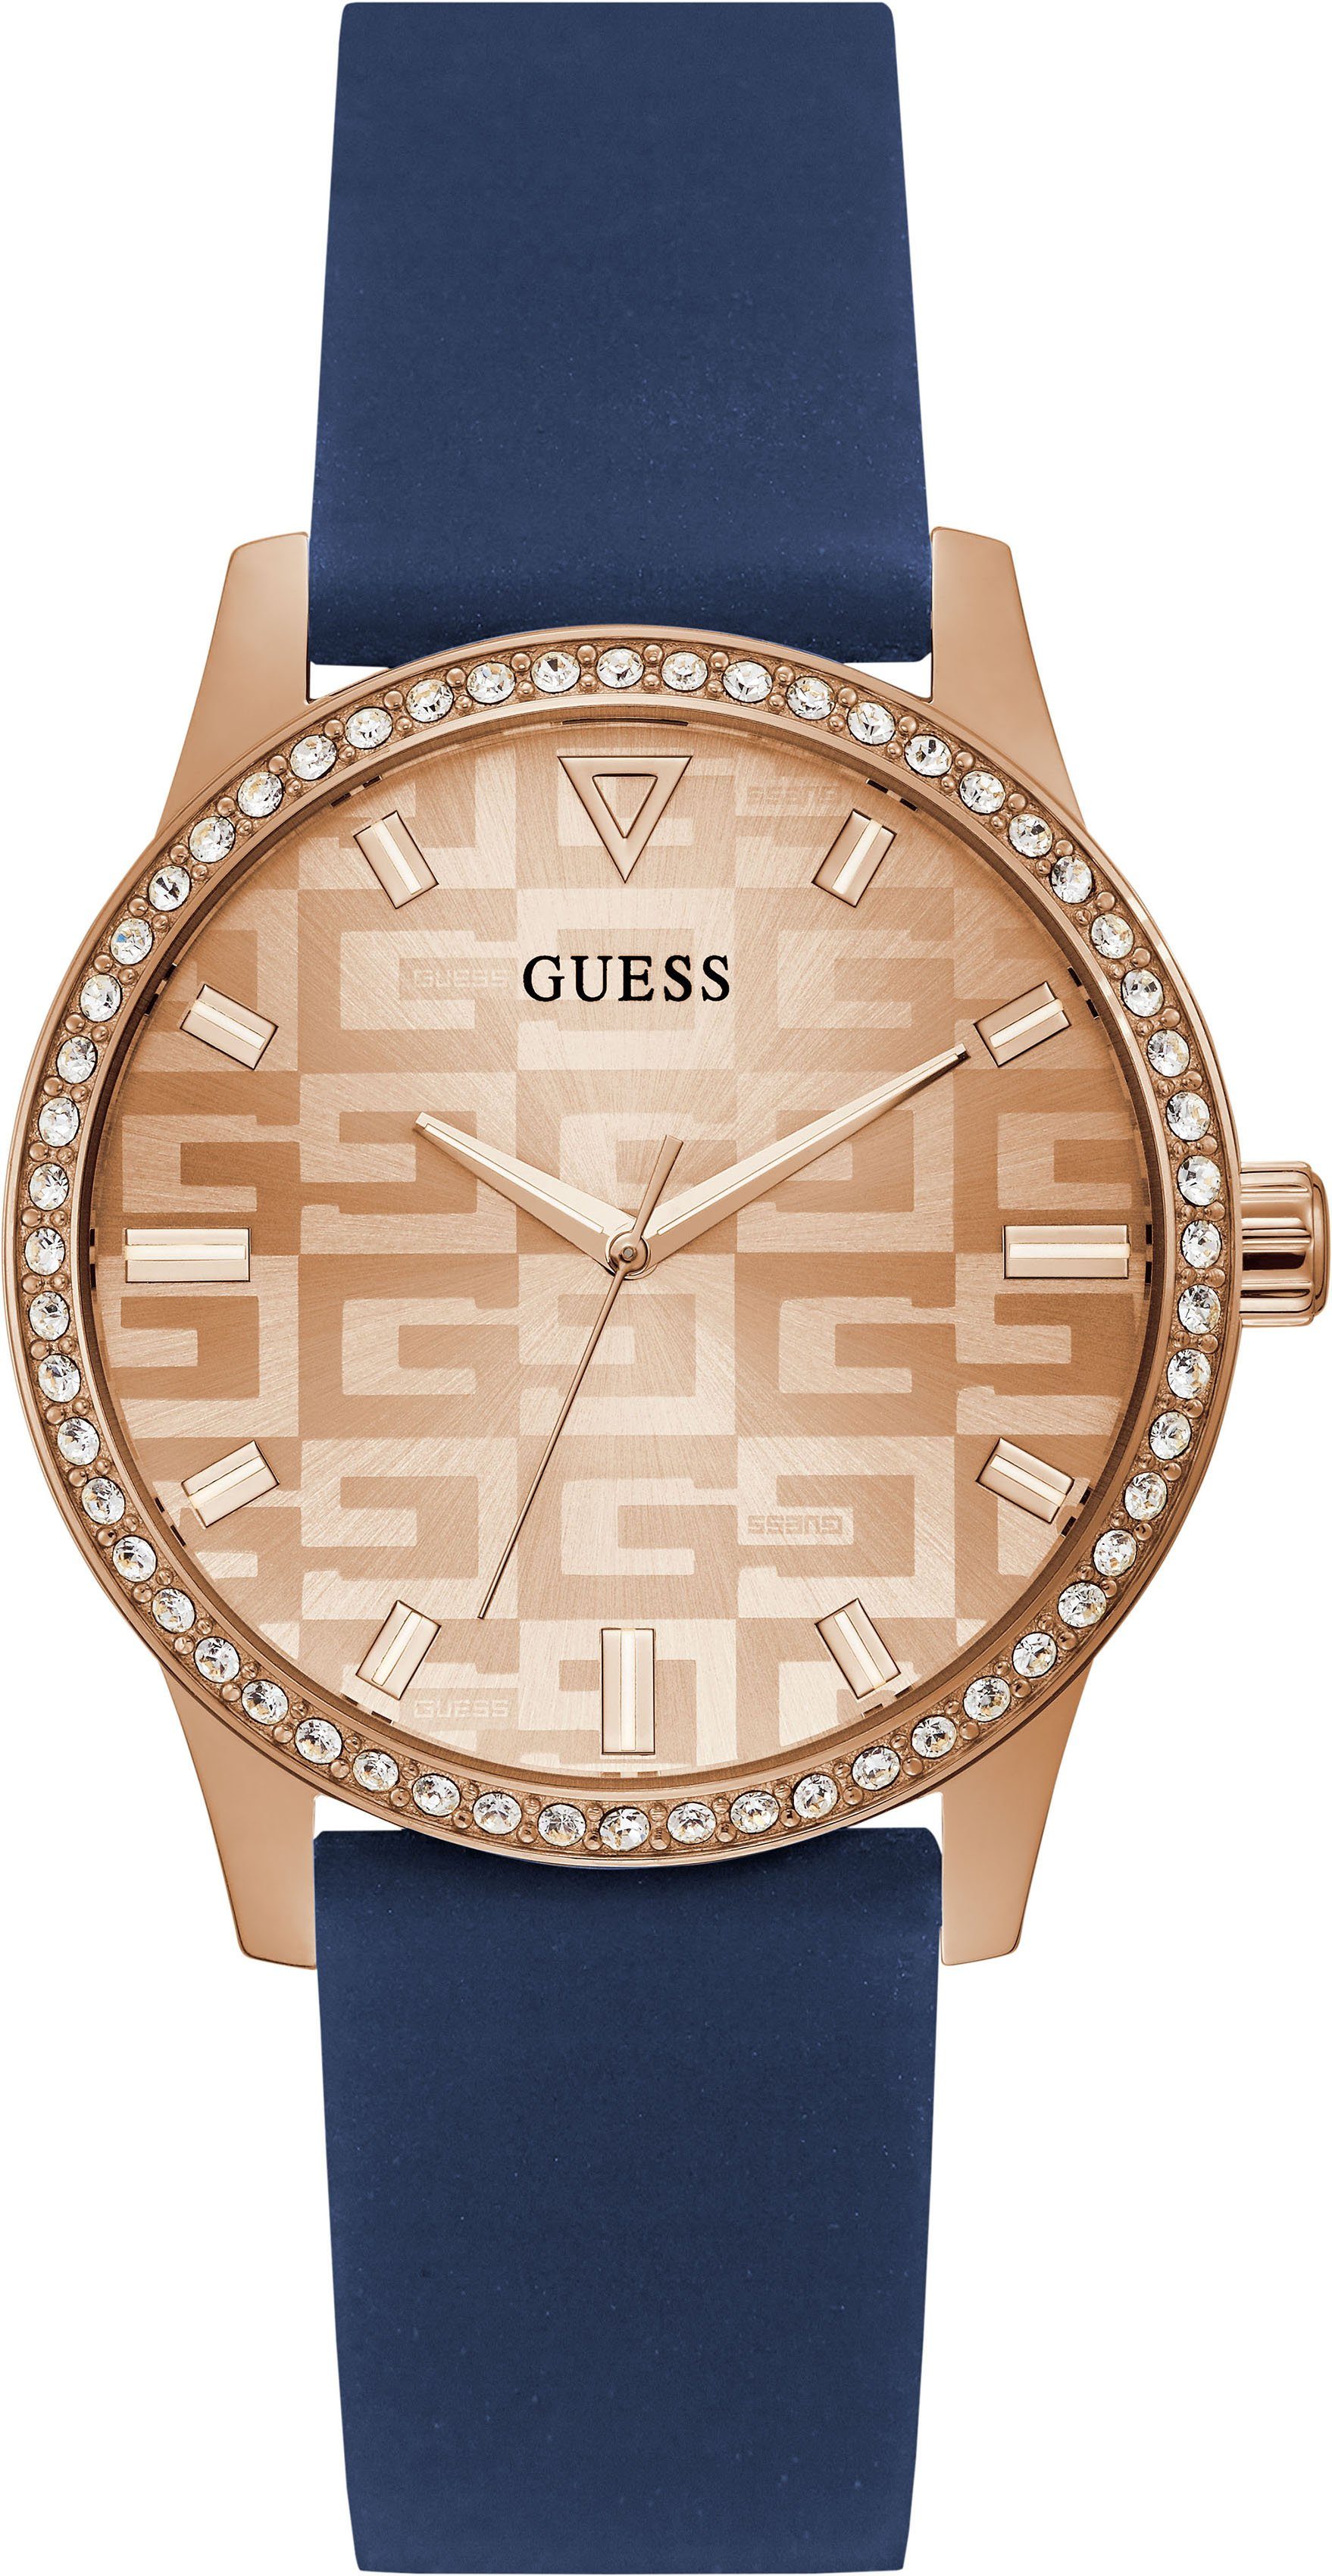 Günstige Guess Uhren Damen online kaufen | OTTO